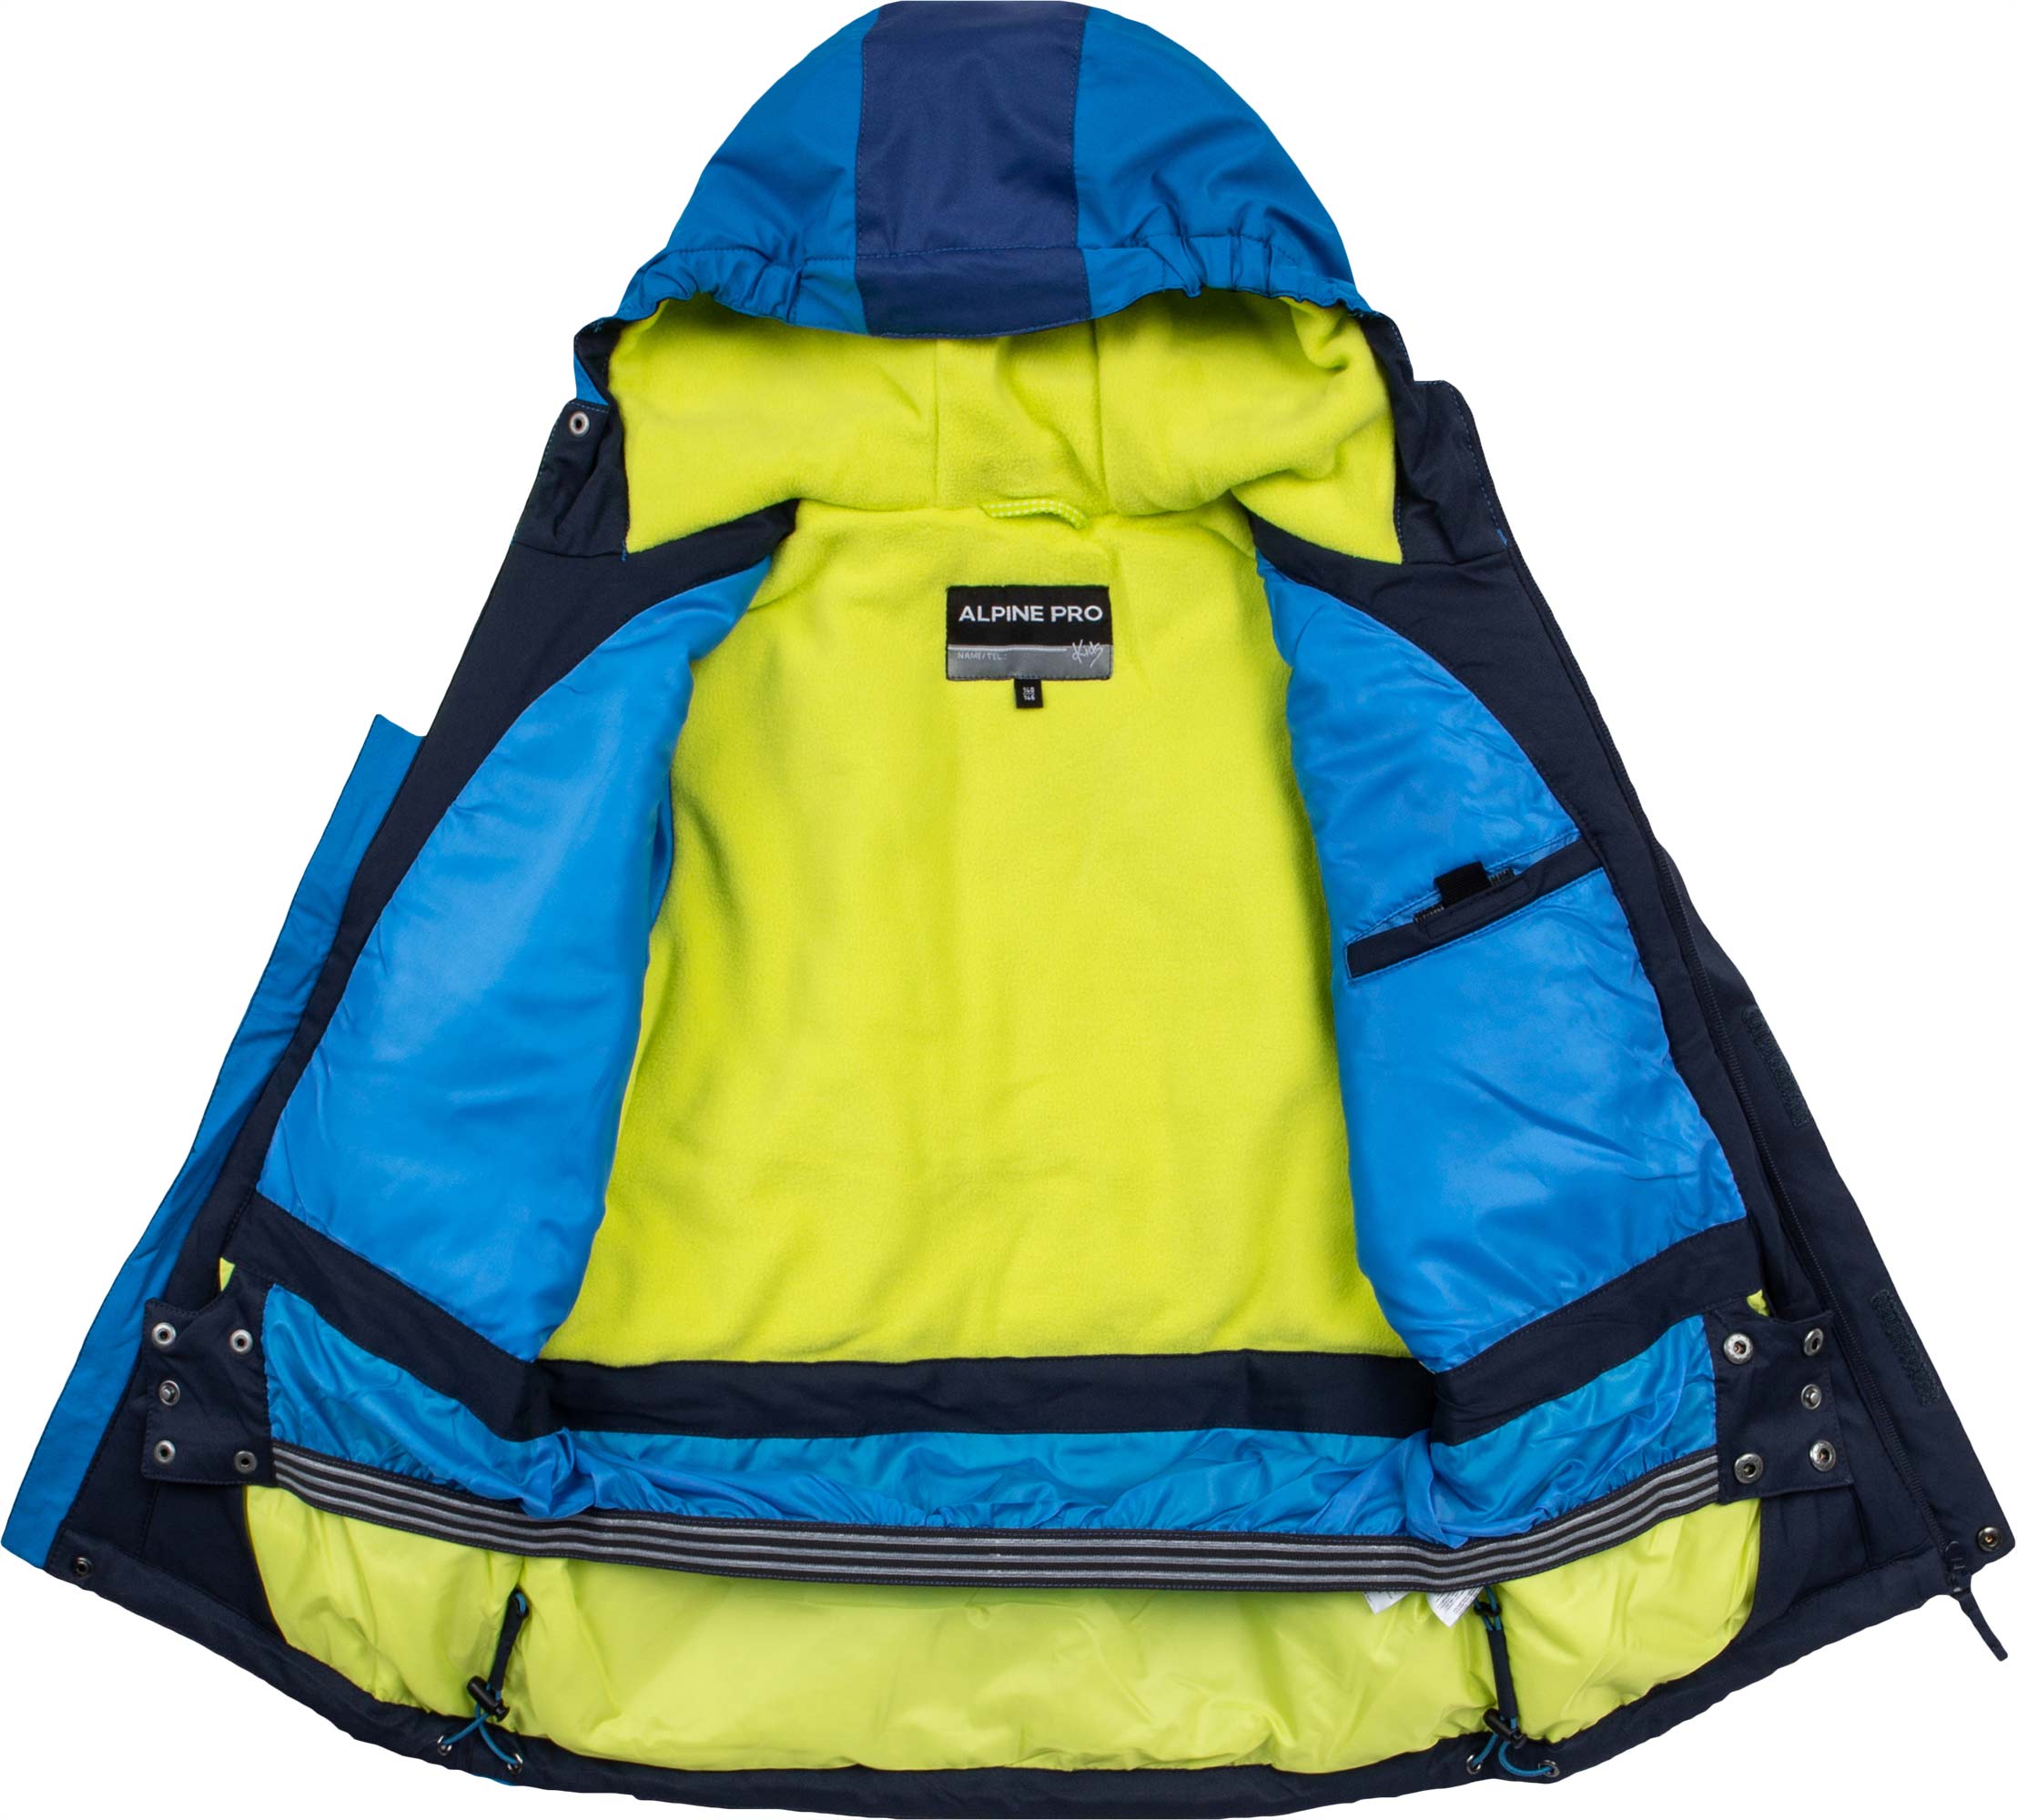 Skijaška jakna za dječake